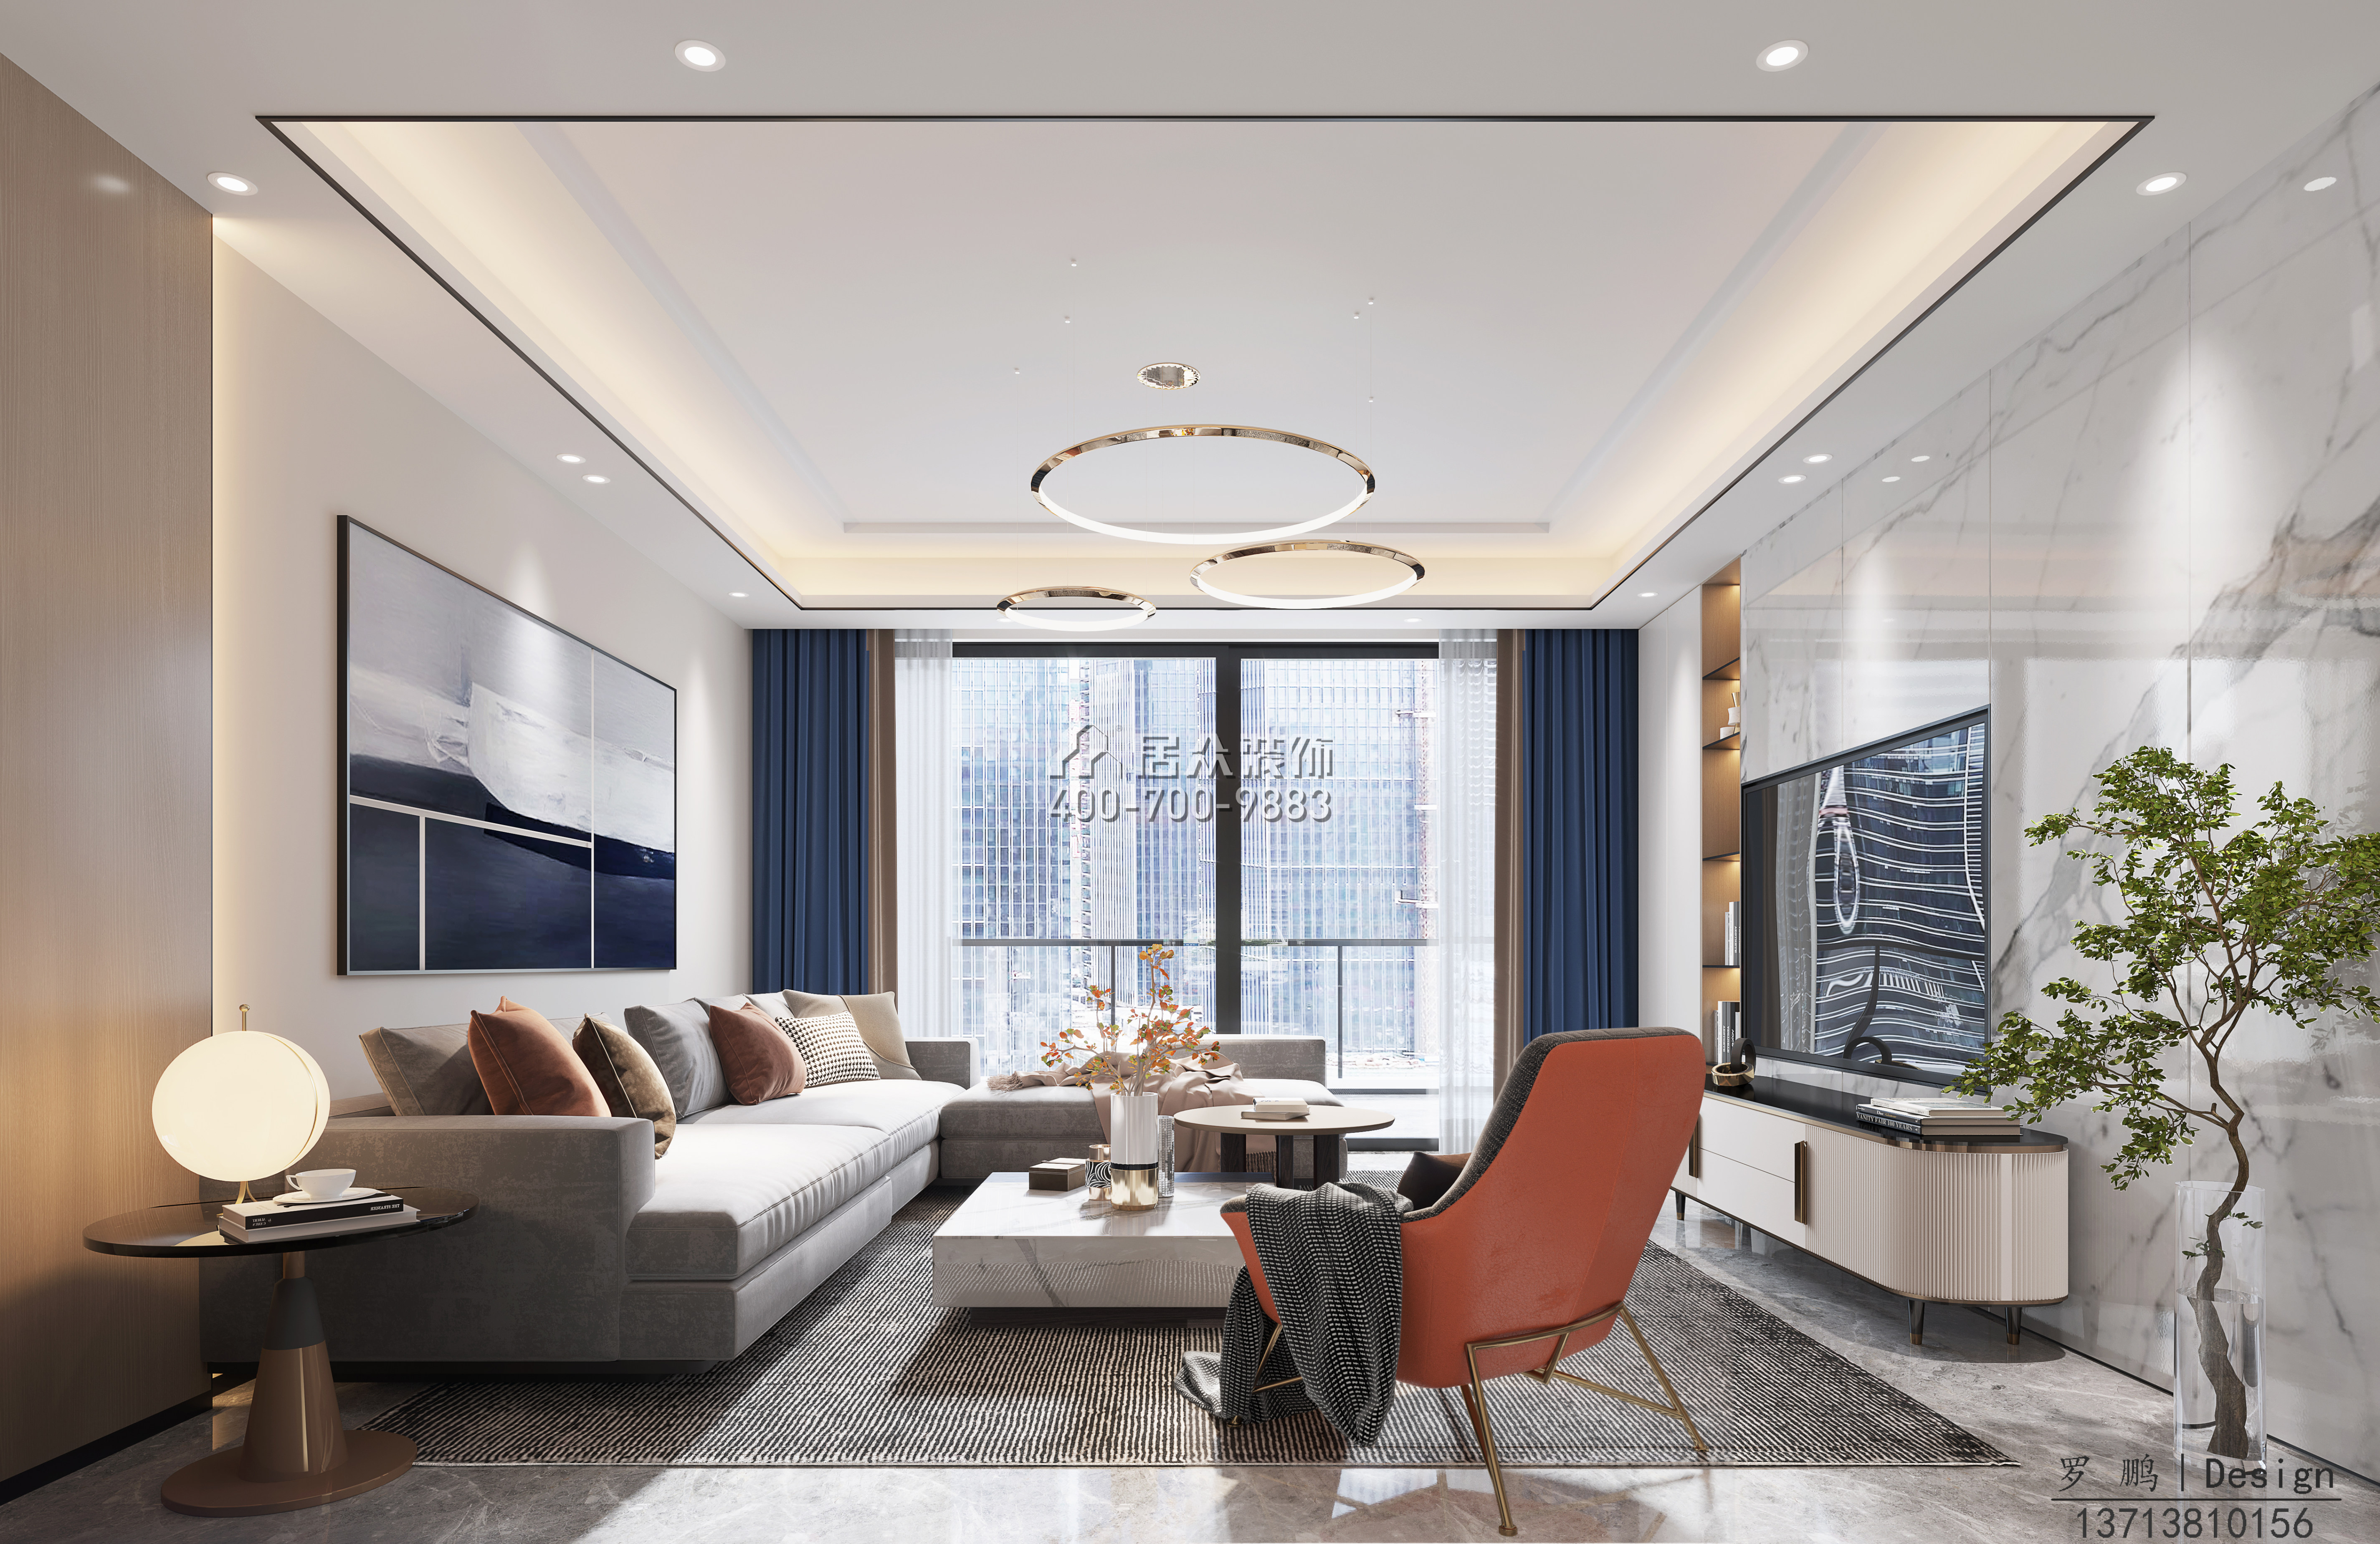 鼎太风华160平方米现代简约风格平层户型客厅装修效果图